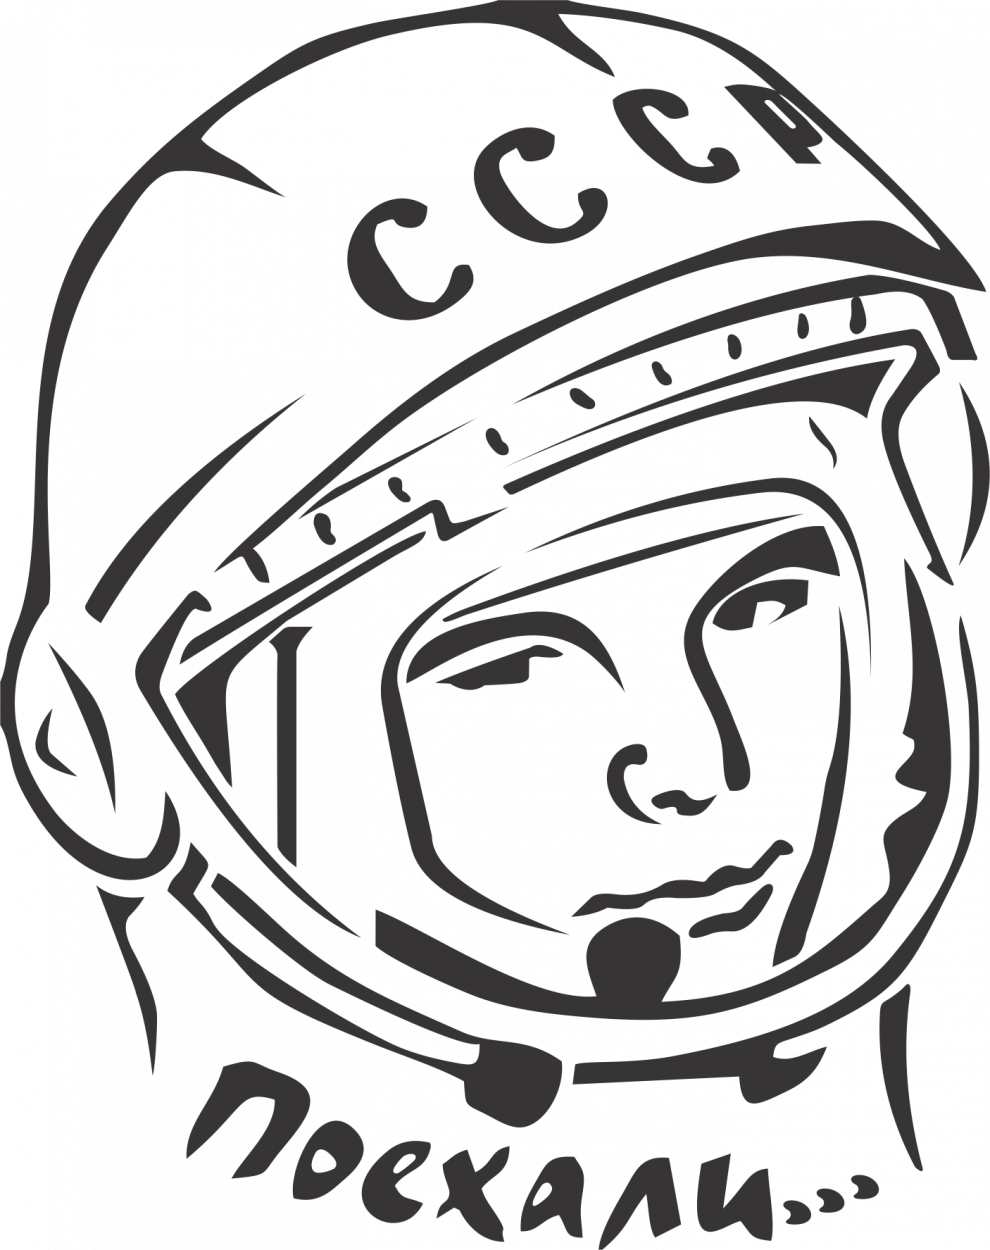 Шаблон шлема космонавта для распечатки. Гагарин портрет. Портрет Юрия Гагарина карандашом.